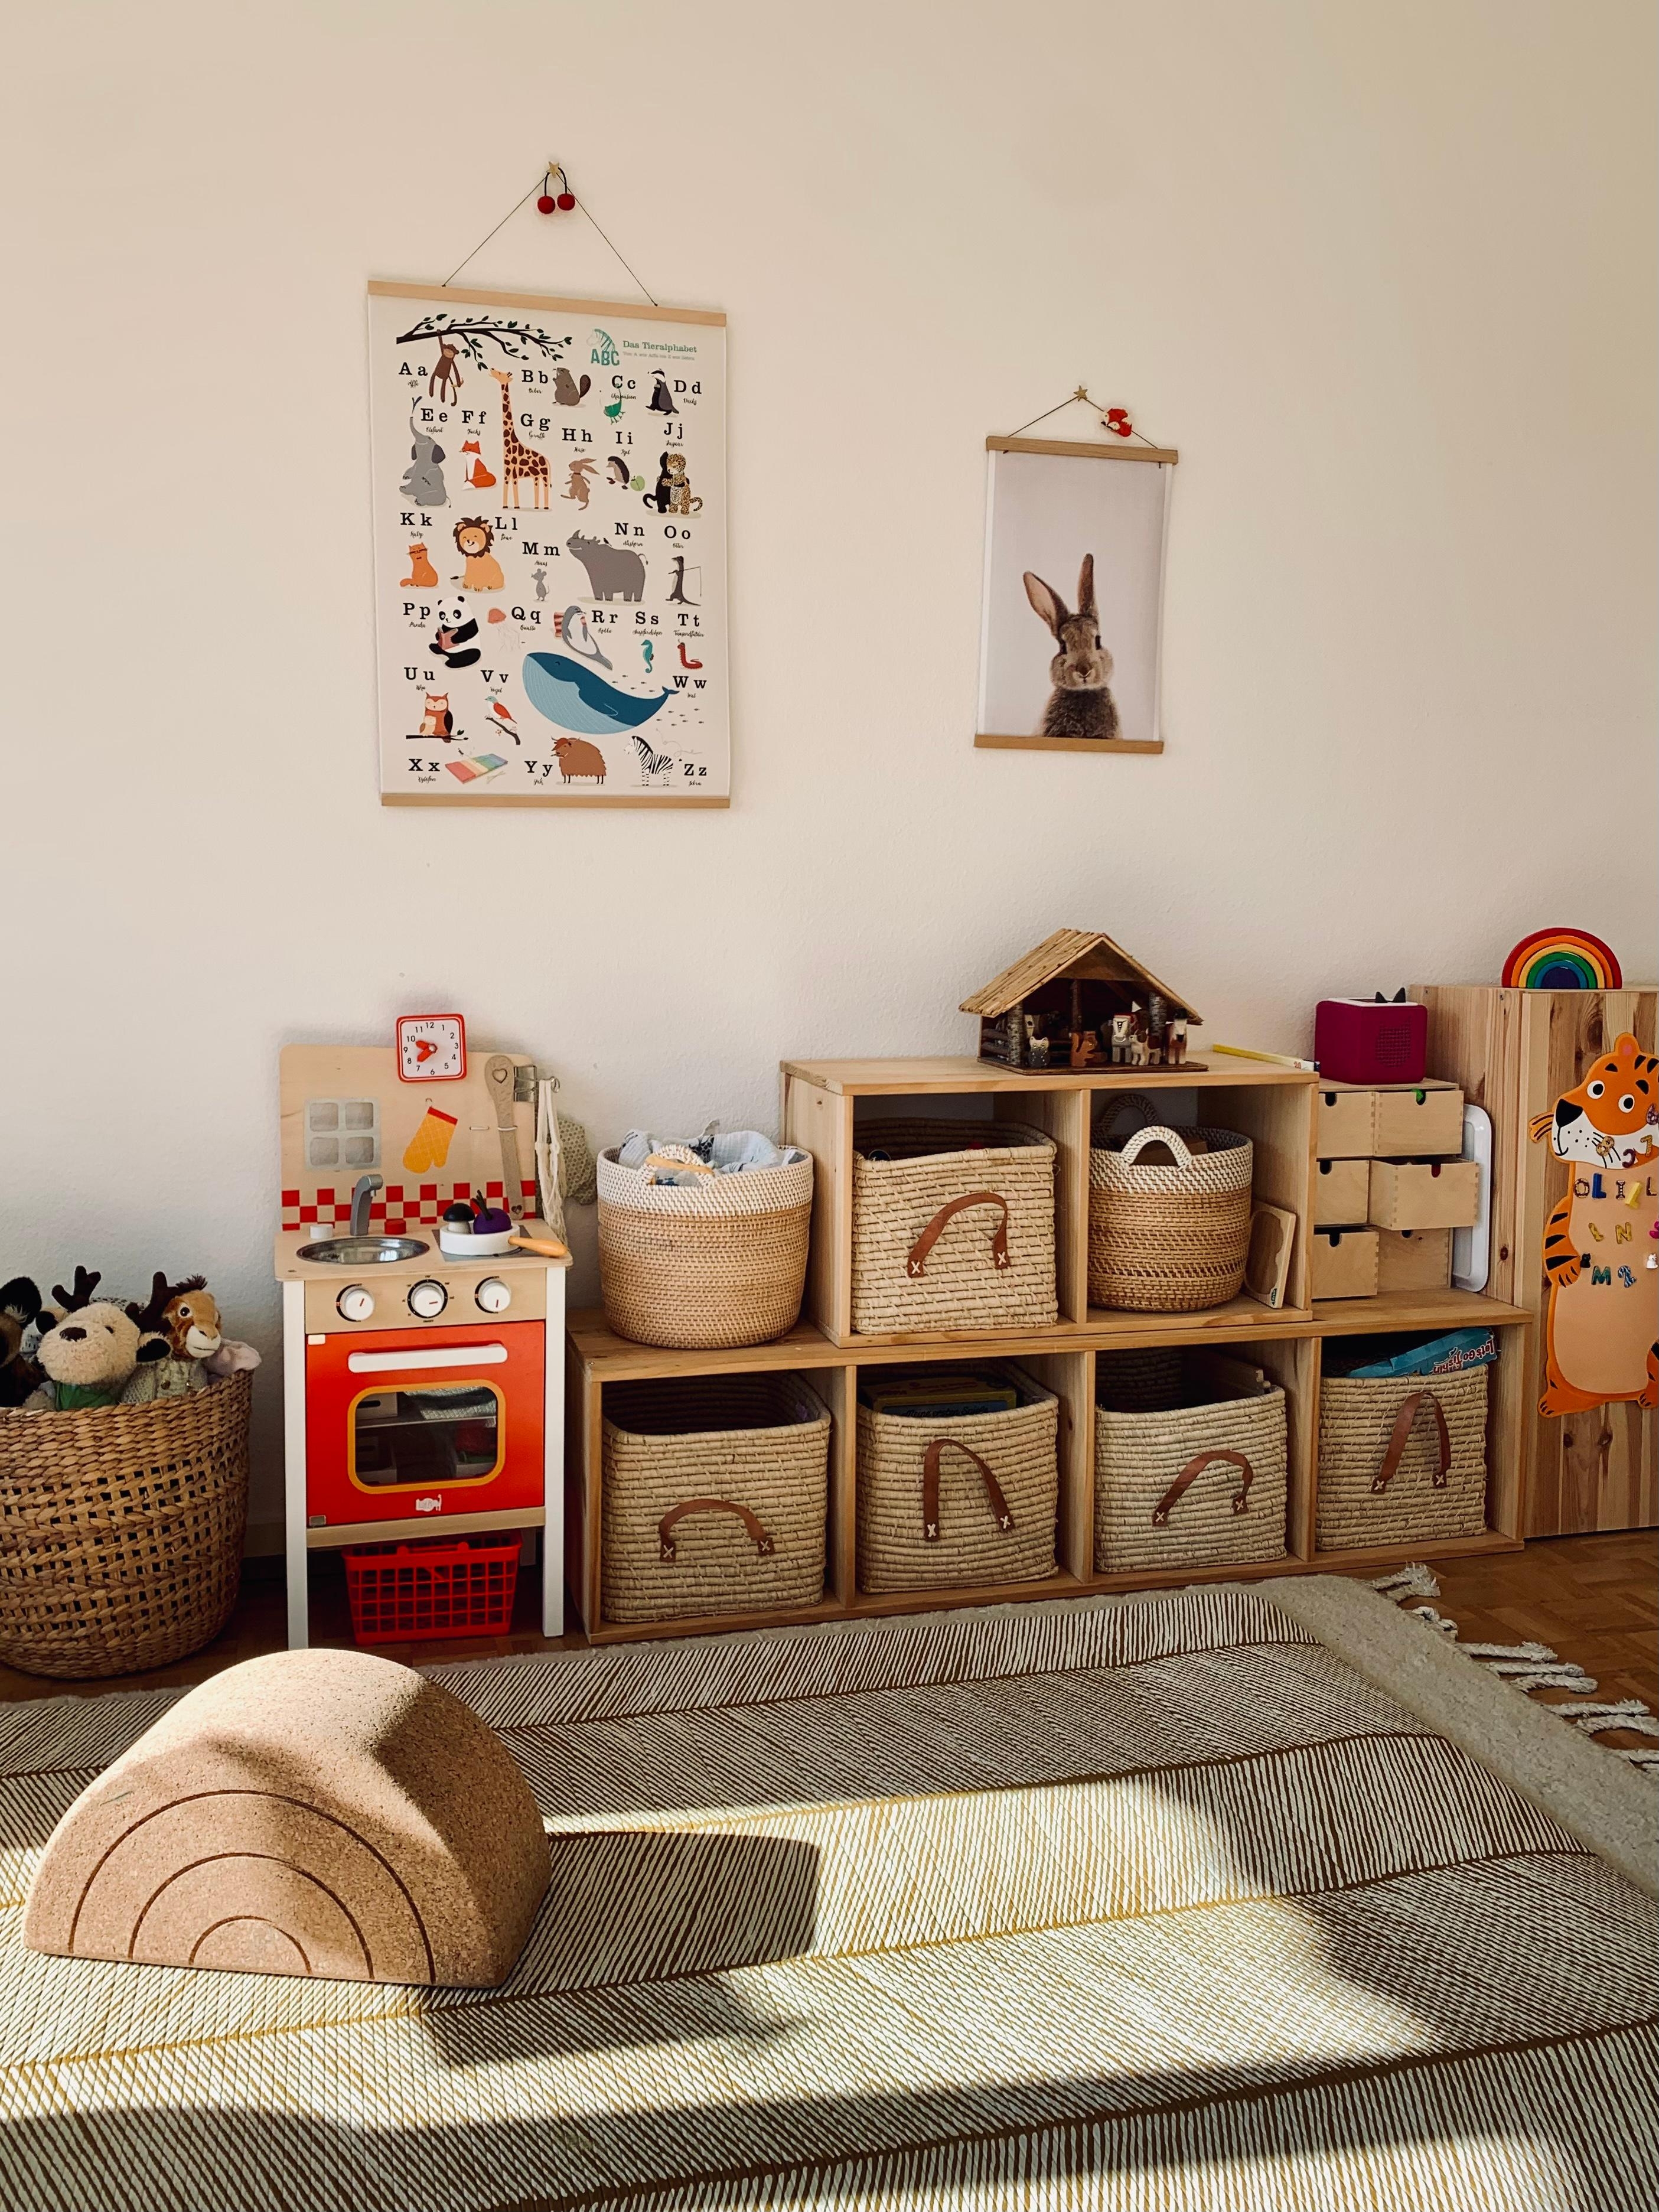 Challenge #spielzimmer 
Style - Farbe - Inhalt - Ordnung
#smallroom #montessori